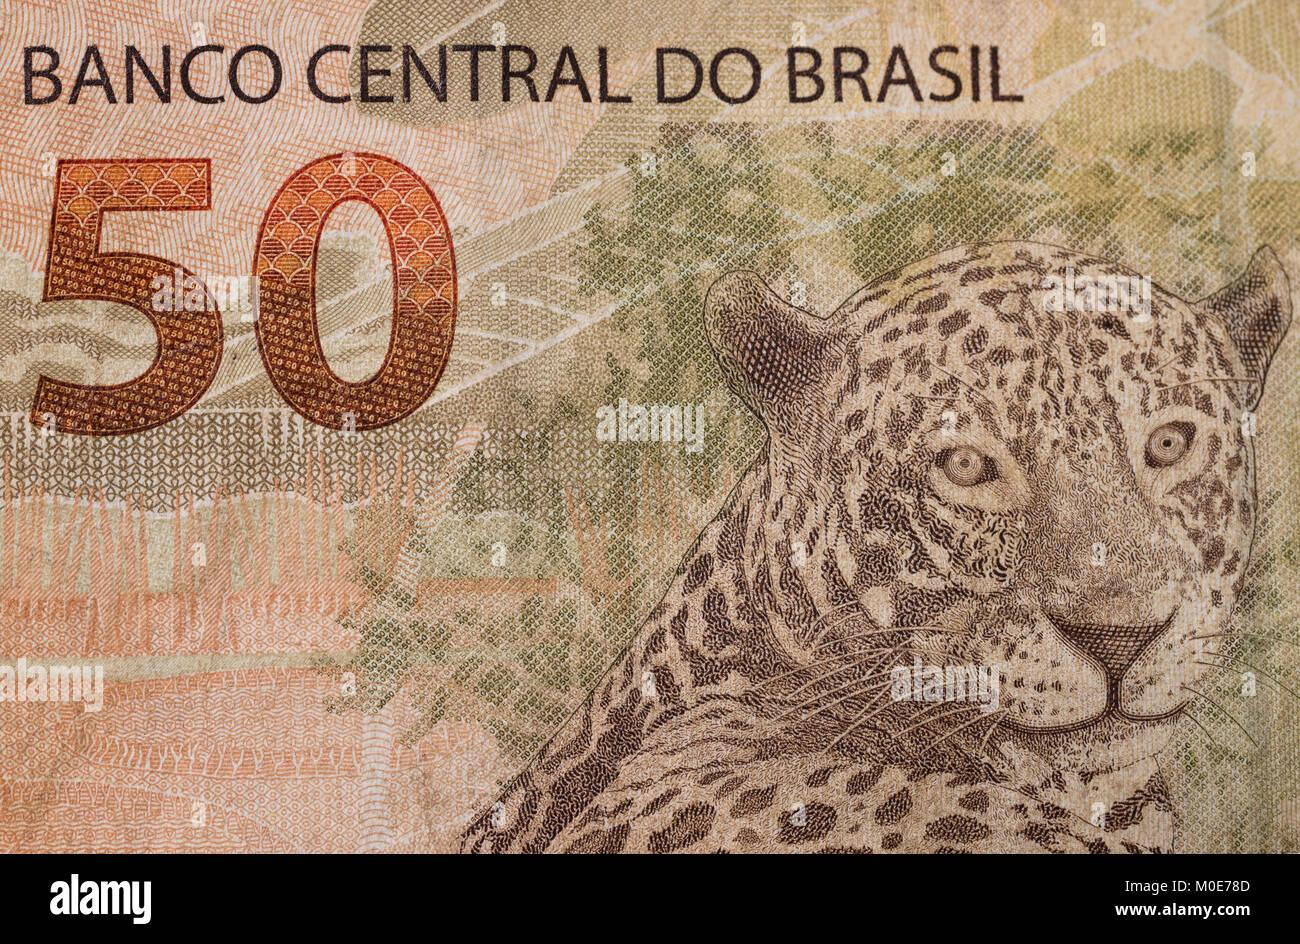 50 (cinquanta) Real brasiliano nota closeup macro, mostrando Jaguar animale, bill valore e banca centrale del Brasile la frase Foto Stock